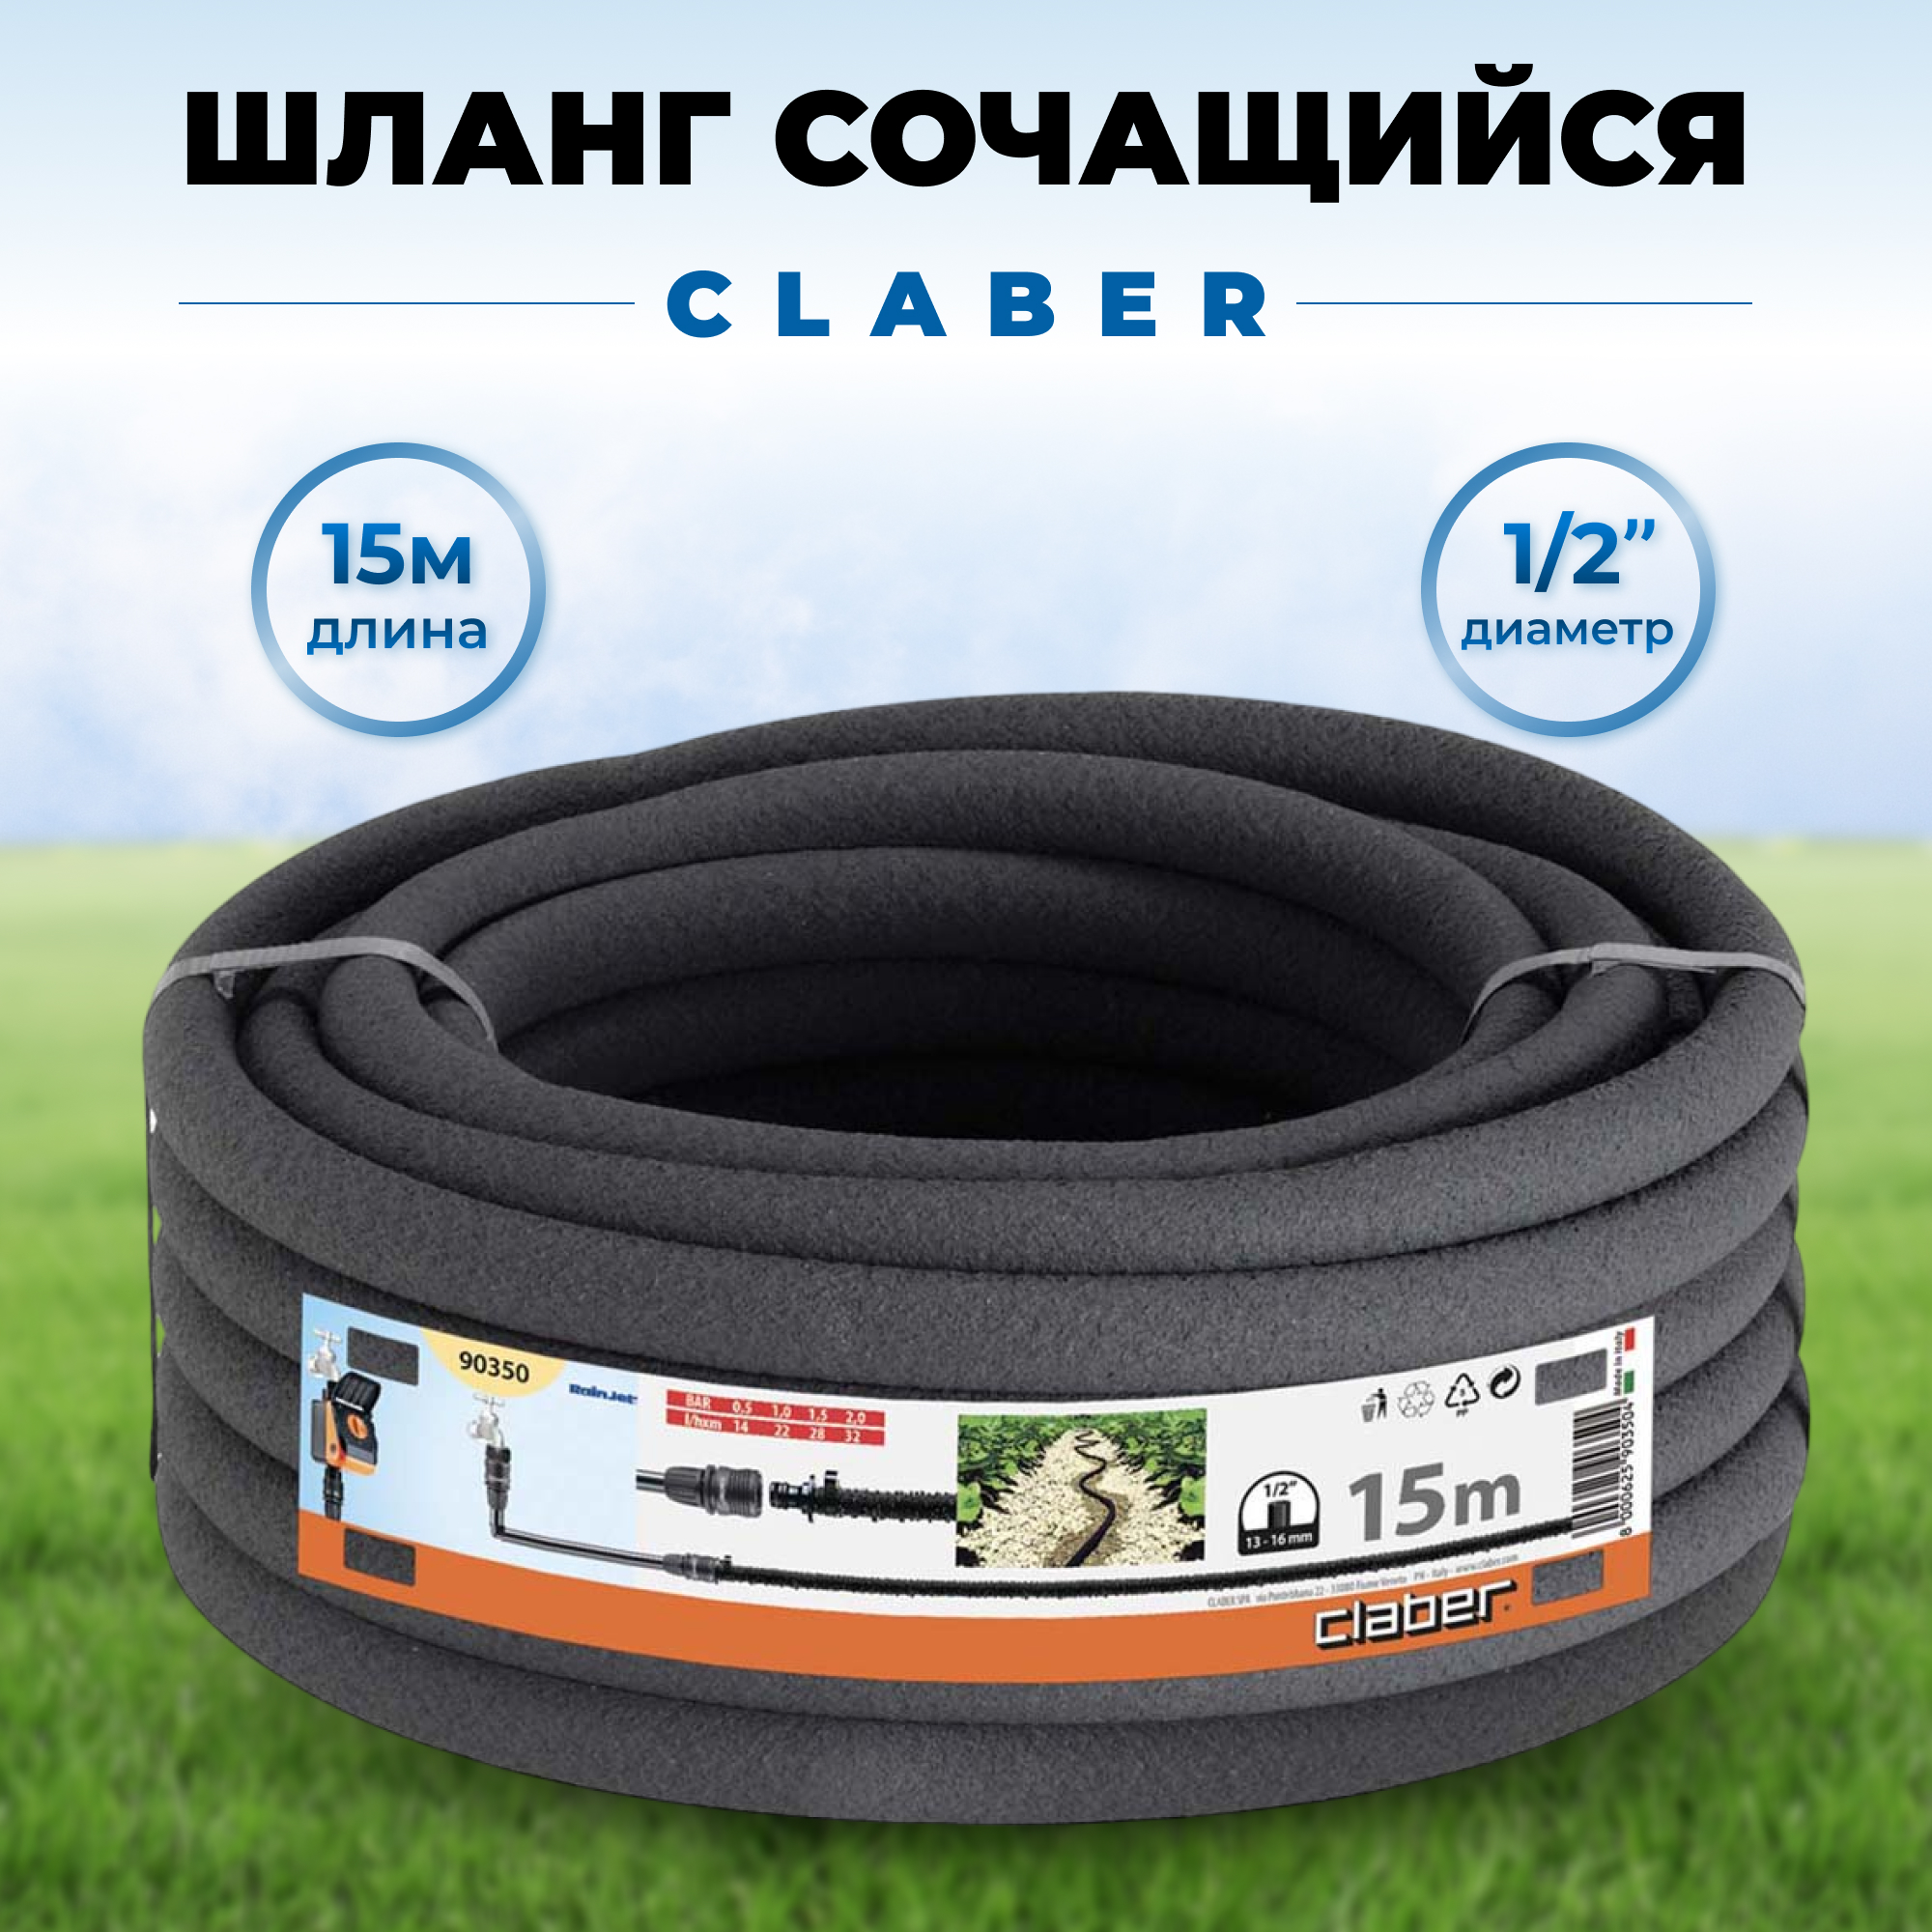 Сочащийся шланг Claber 15 м, цвет черный - фото 2